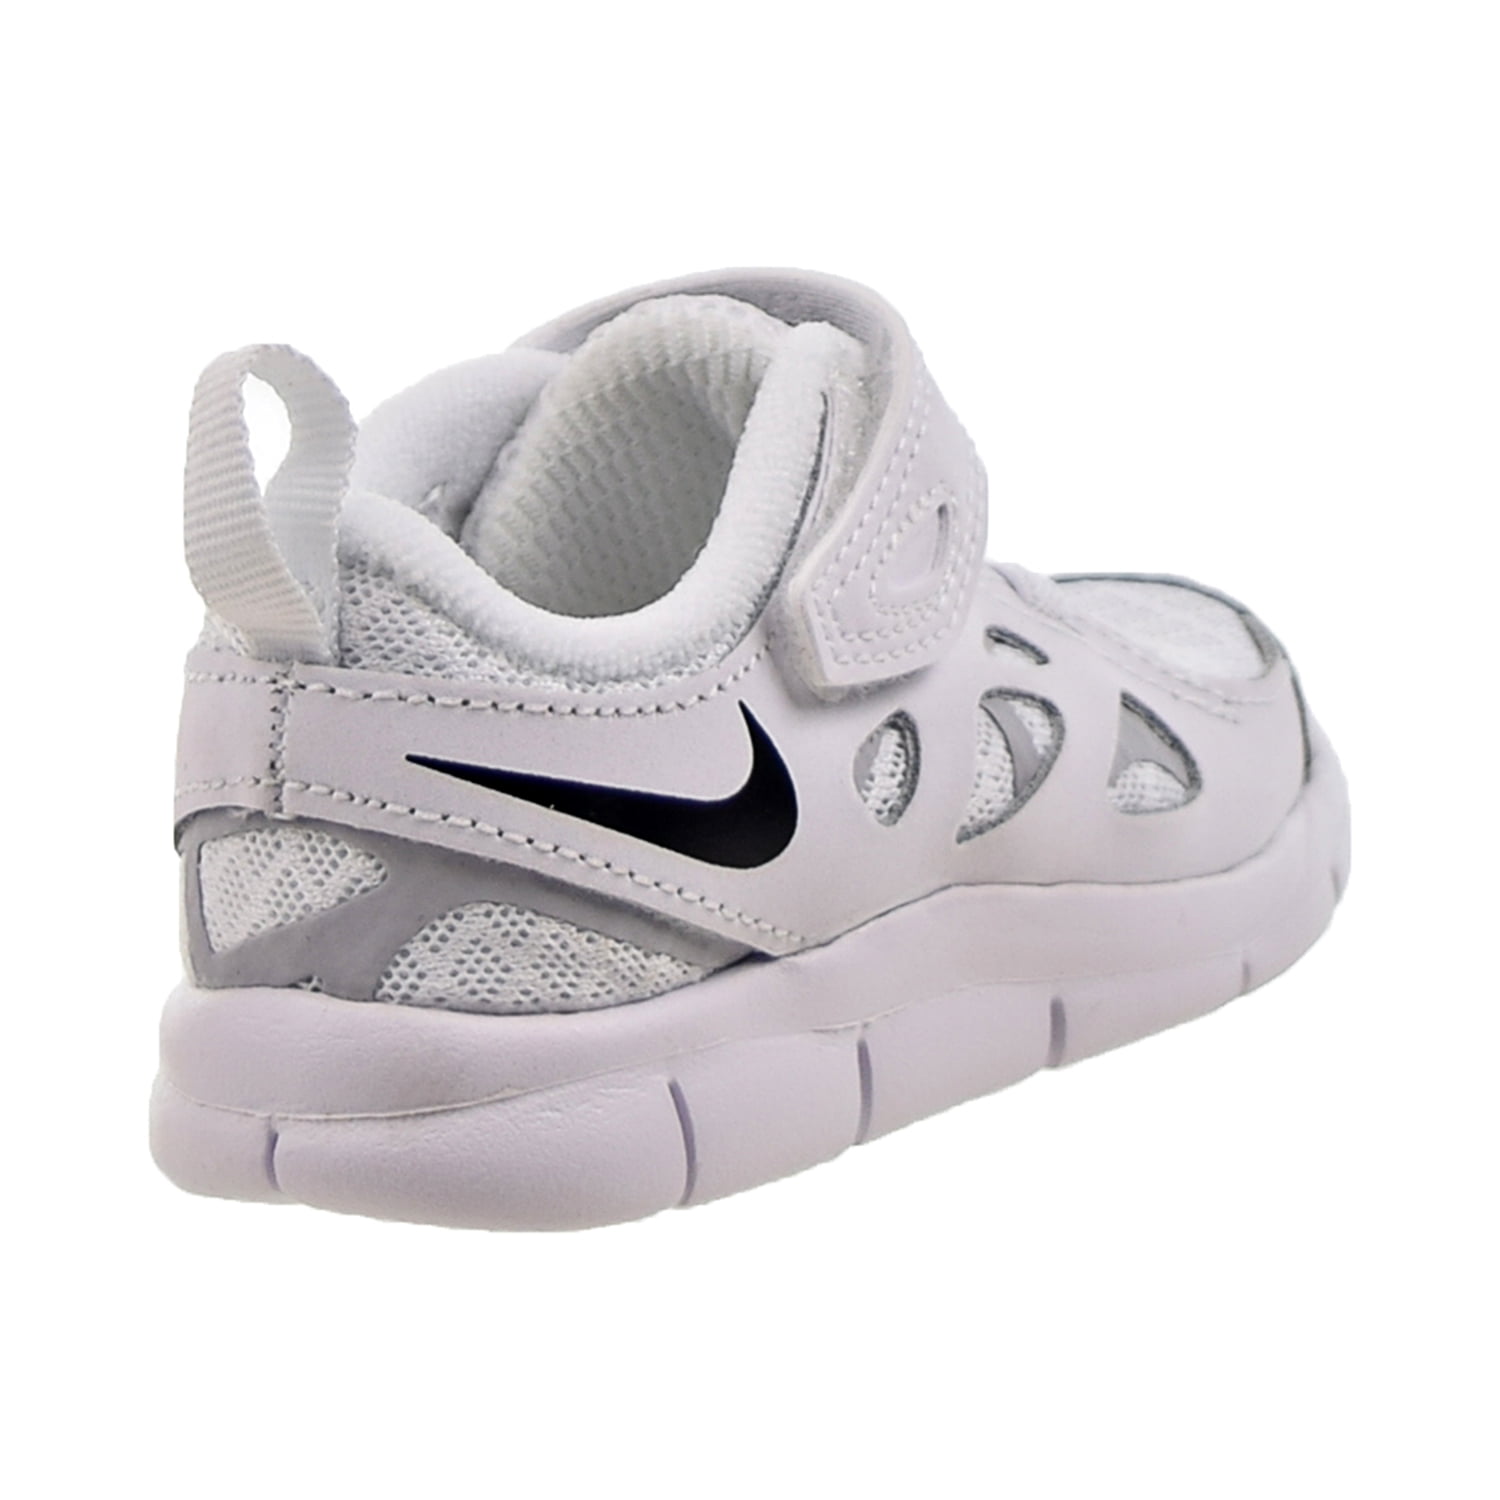 mando Circunstancias imprevistas Sin sentido Nike Free Run 2 (TD) Baby/Toddler's Shoes White-Black da2692-100 -  Walmart.com